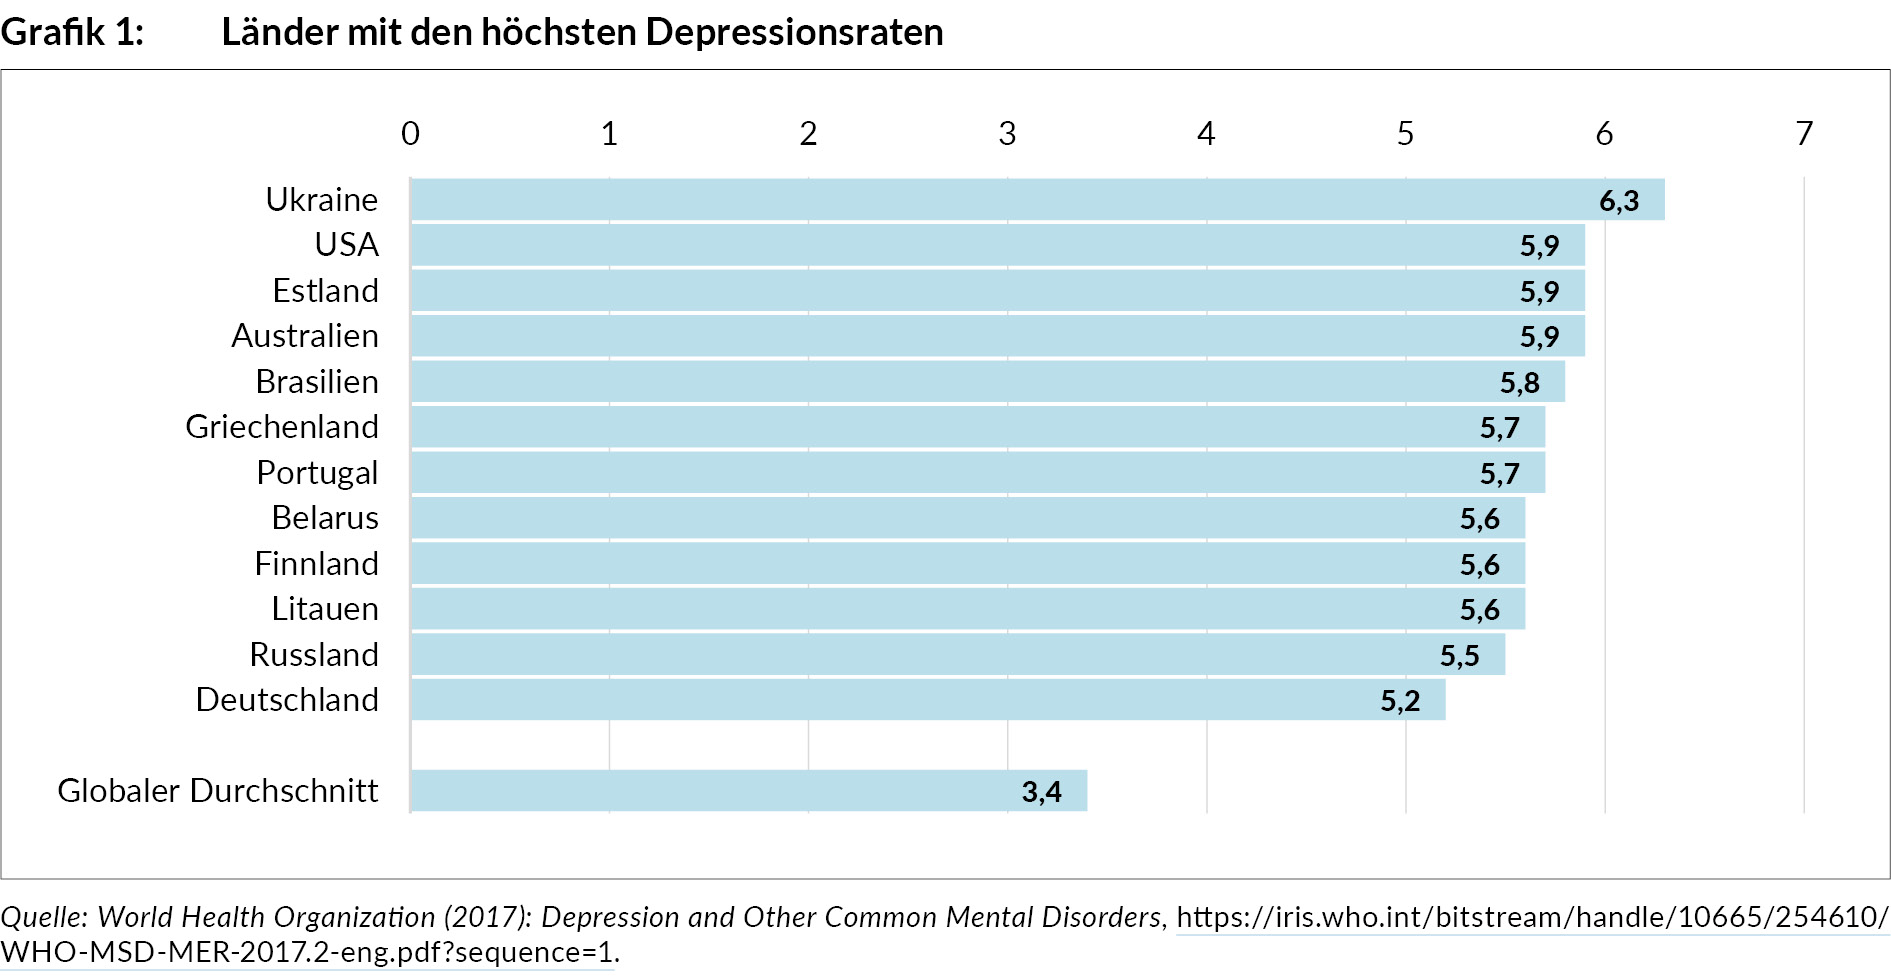 laender_mit_d_hoechsten_depressionsraten_grafik_ua290_6.jpg